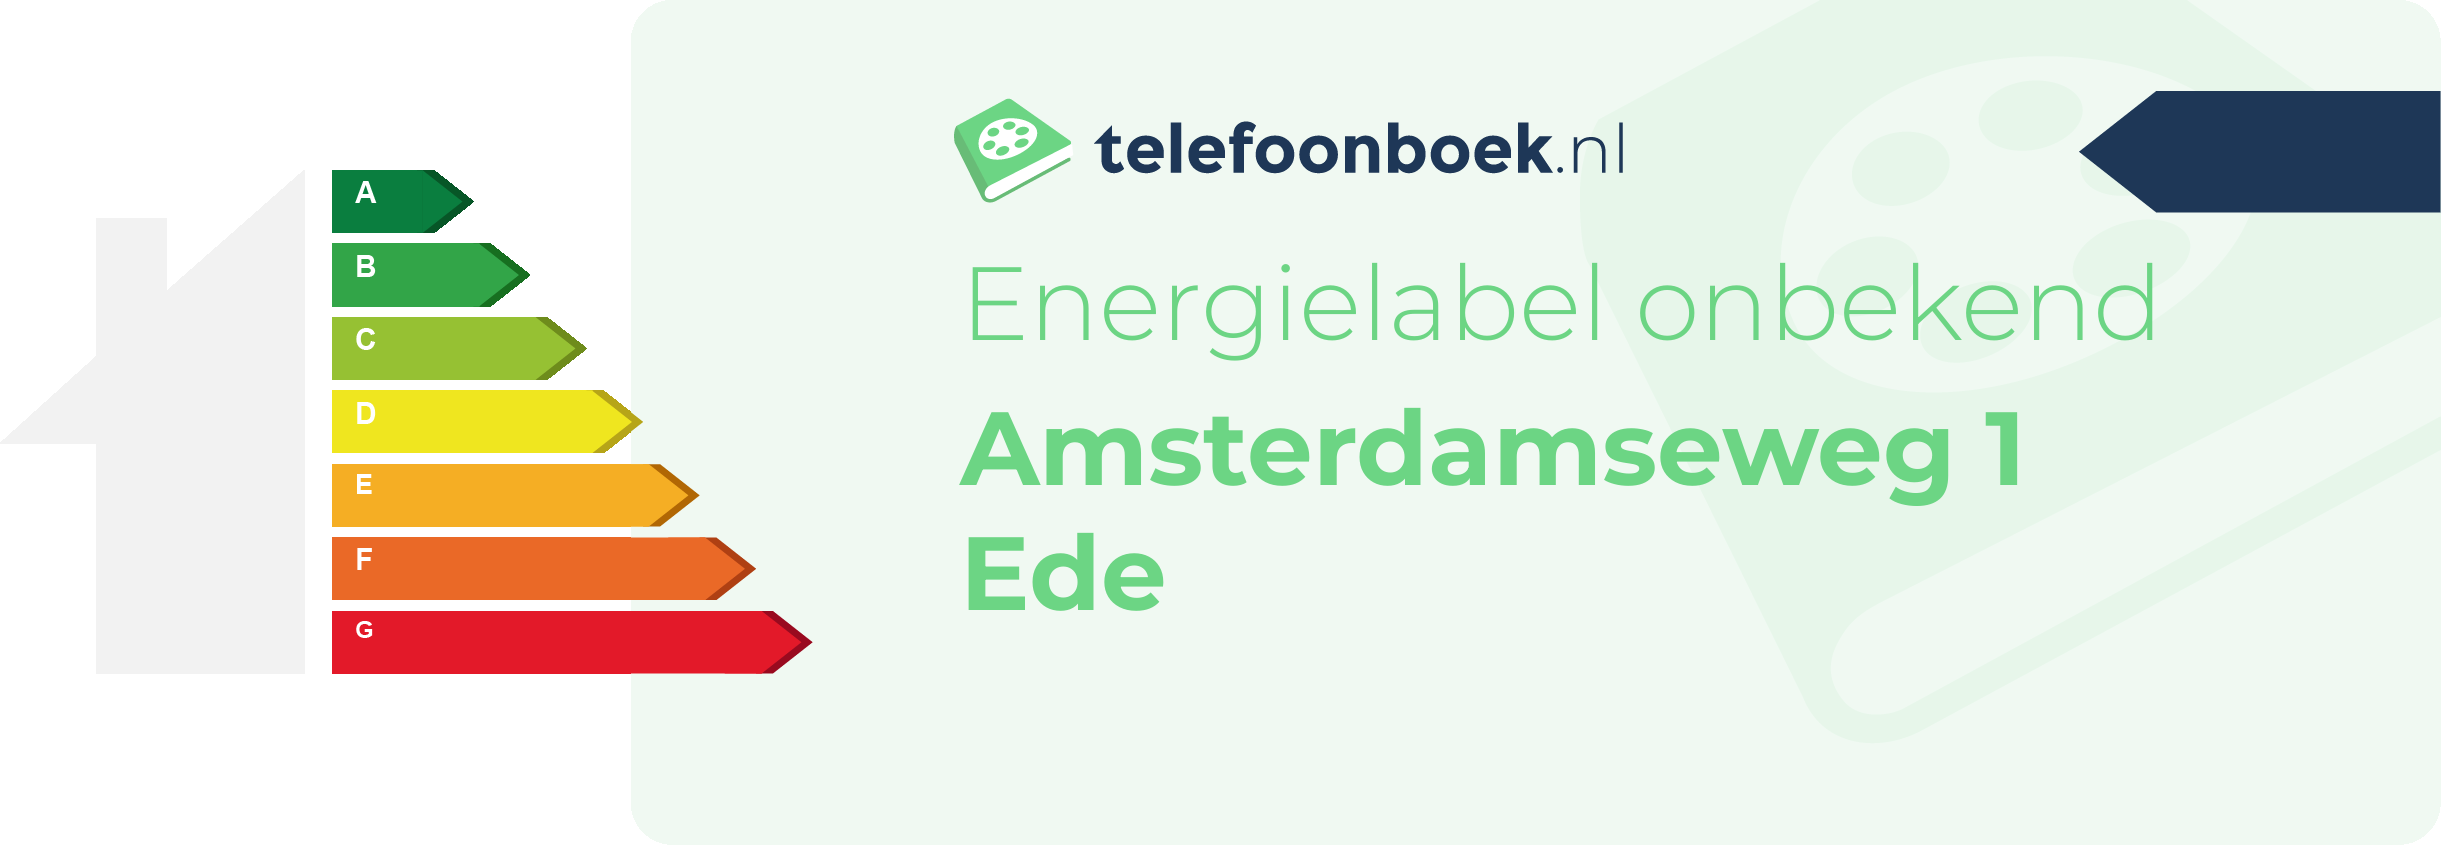 Energielabel Amsterdamseweg 1 Ede